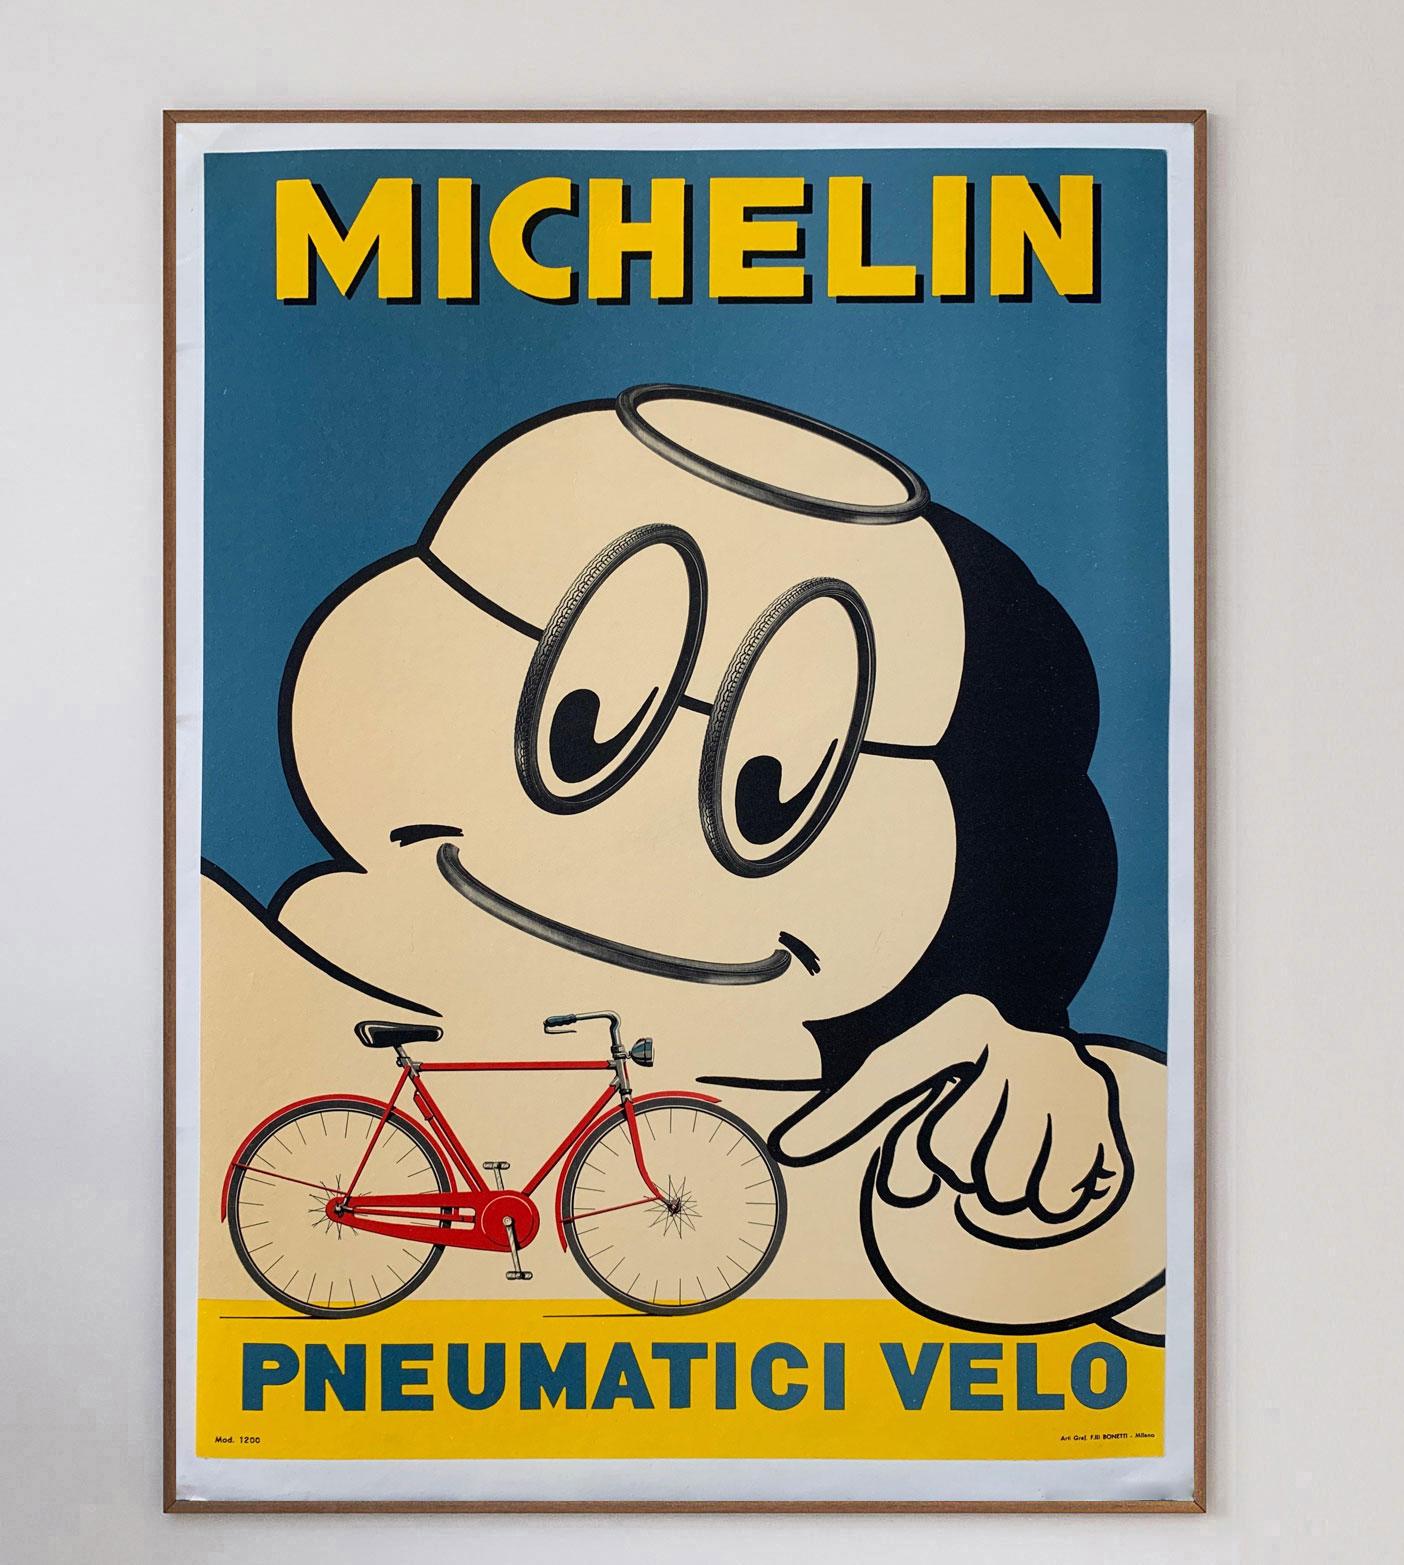 Magnifique affiche imprimée par Verga Printers Milano, cette affiche publicitaire pour les pneus Michelin a été créée en 1959 et représente la mascotte de Michelin, Bibendum, alias Bibendum, poussant une bicyclette de l'époque avec le texte